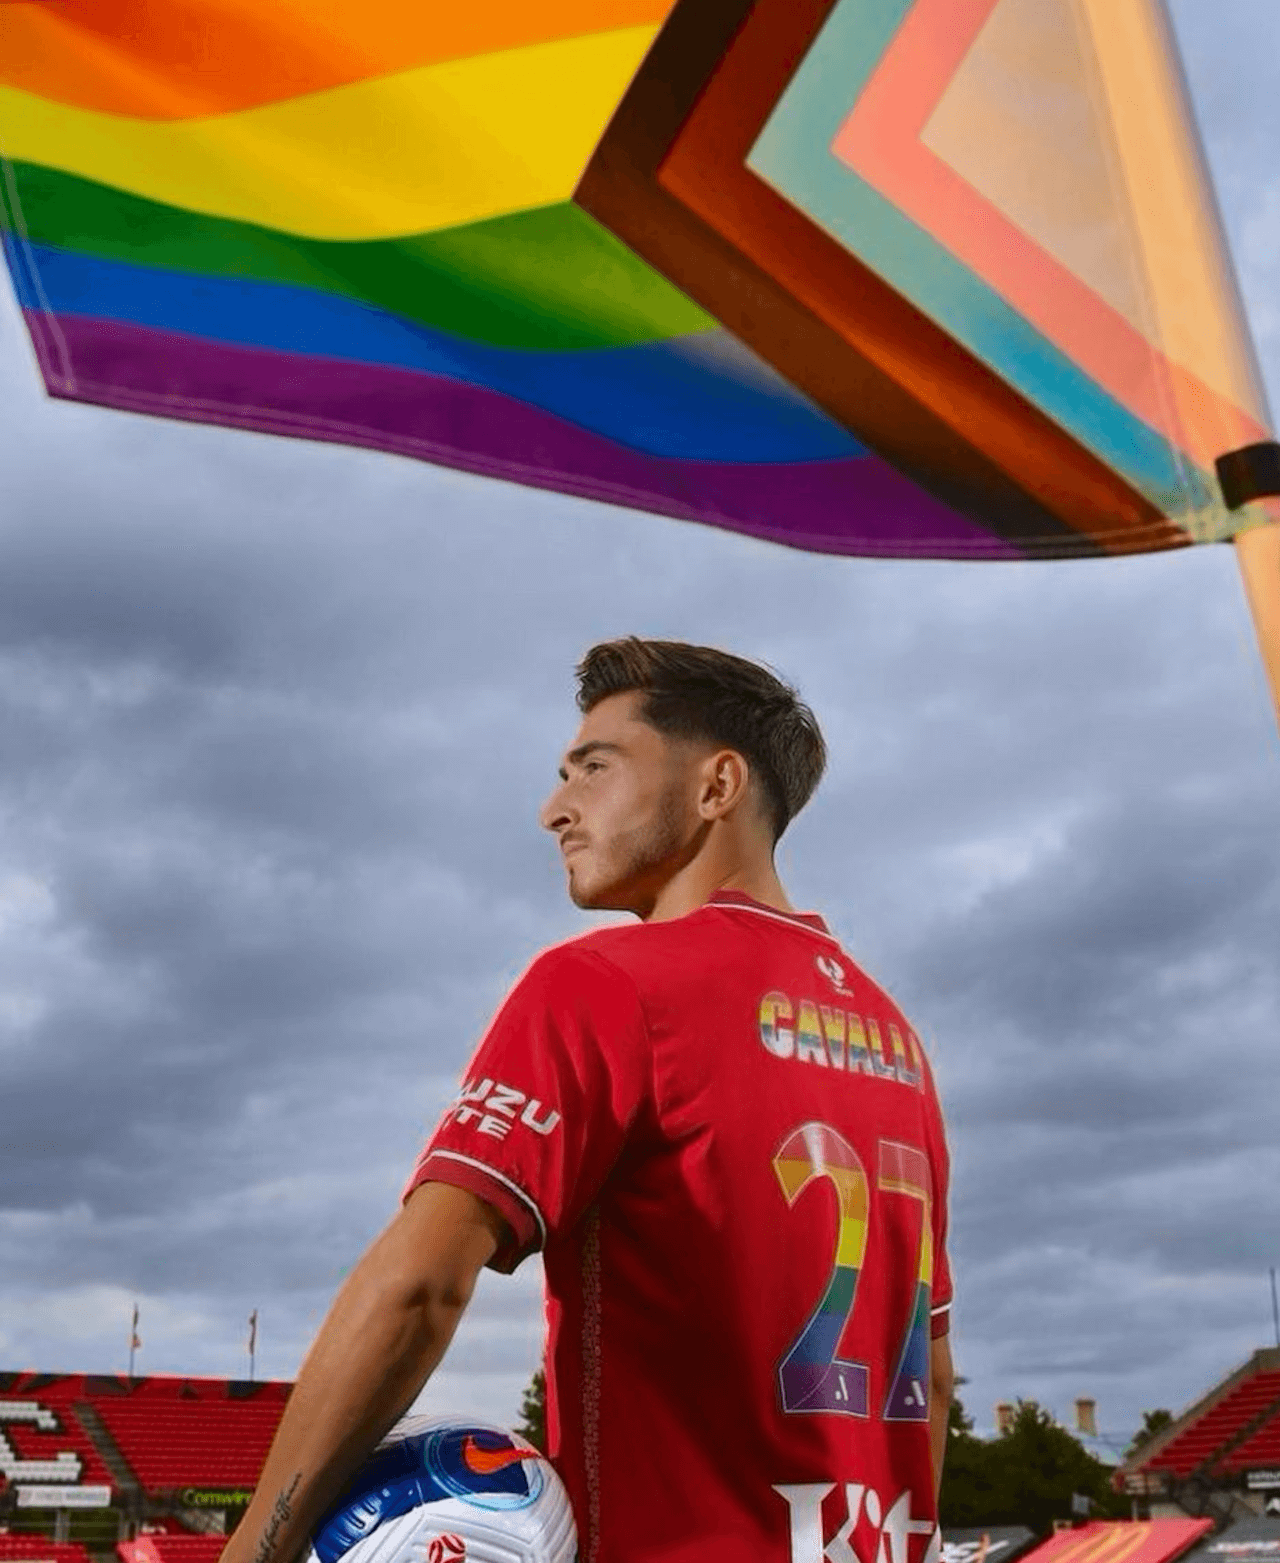 Josh Cavallo: "Infinite minacce di morte perché calciatore omosessuale" - Josh Cavallo pride - Gay.it